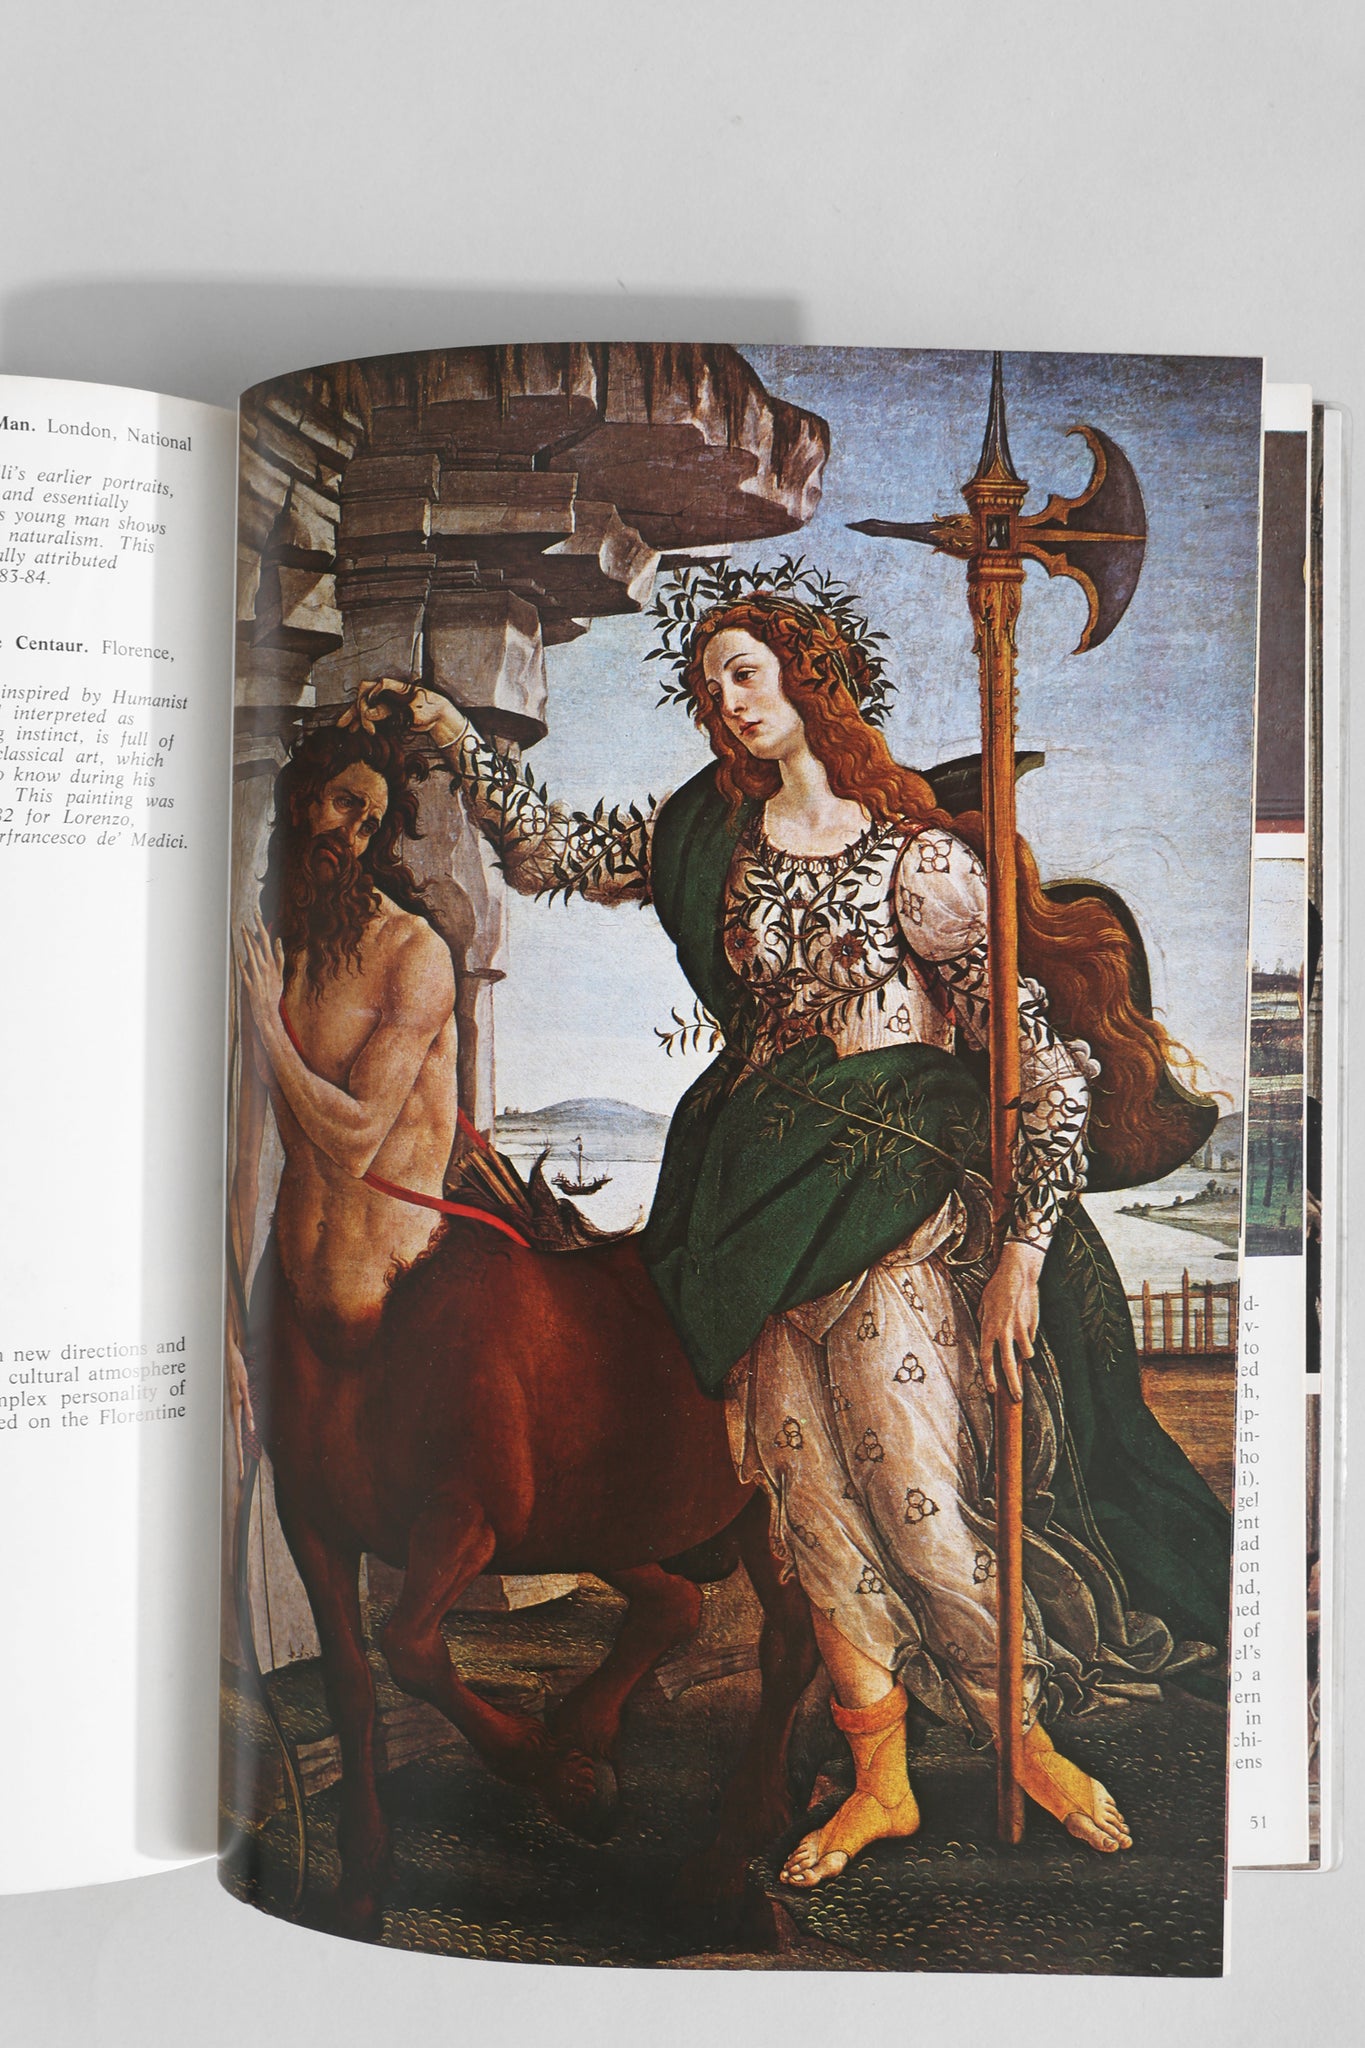 Botticelli by Bruno Santi Book